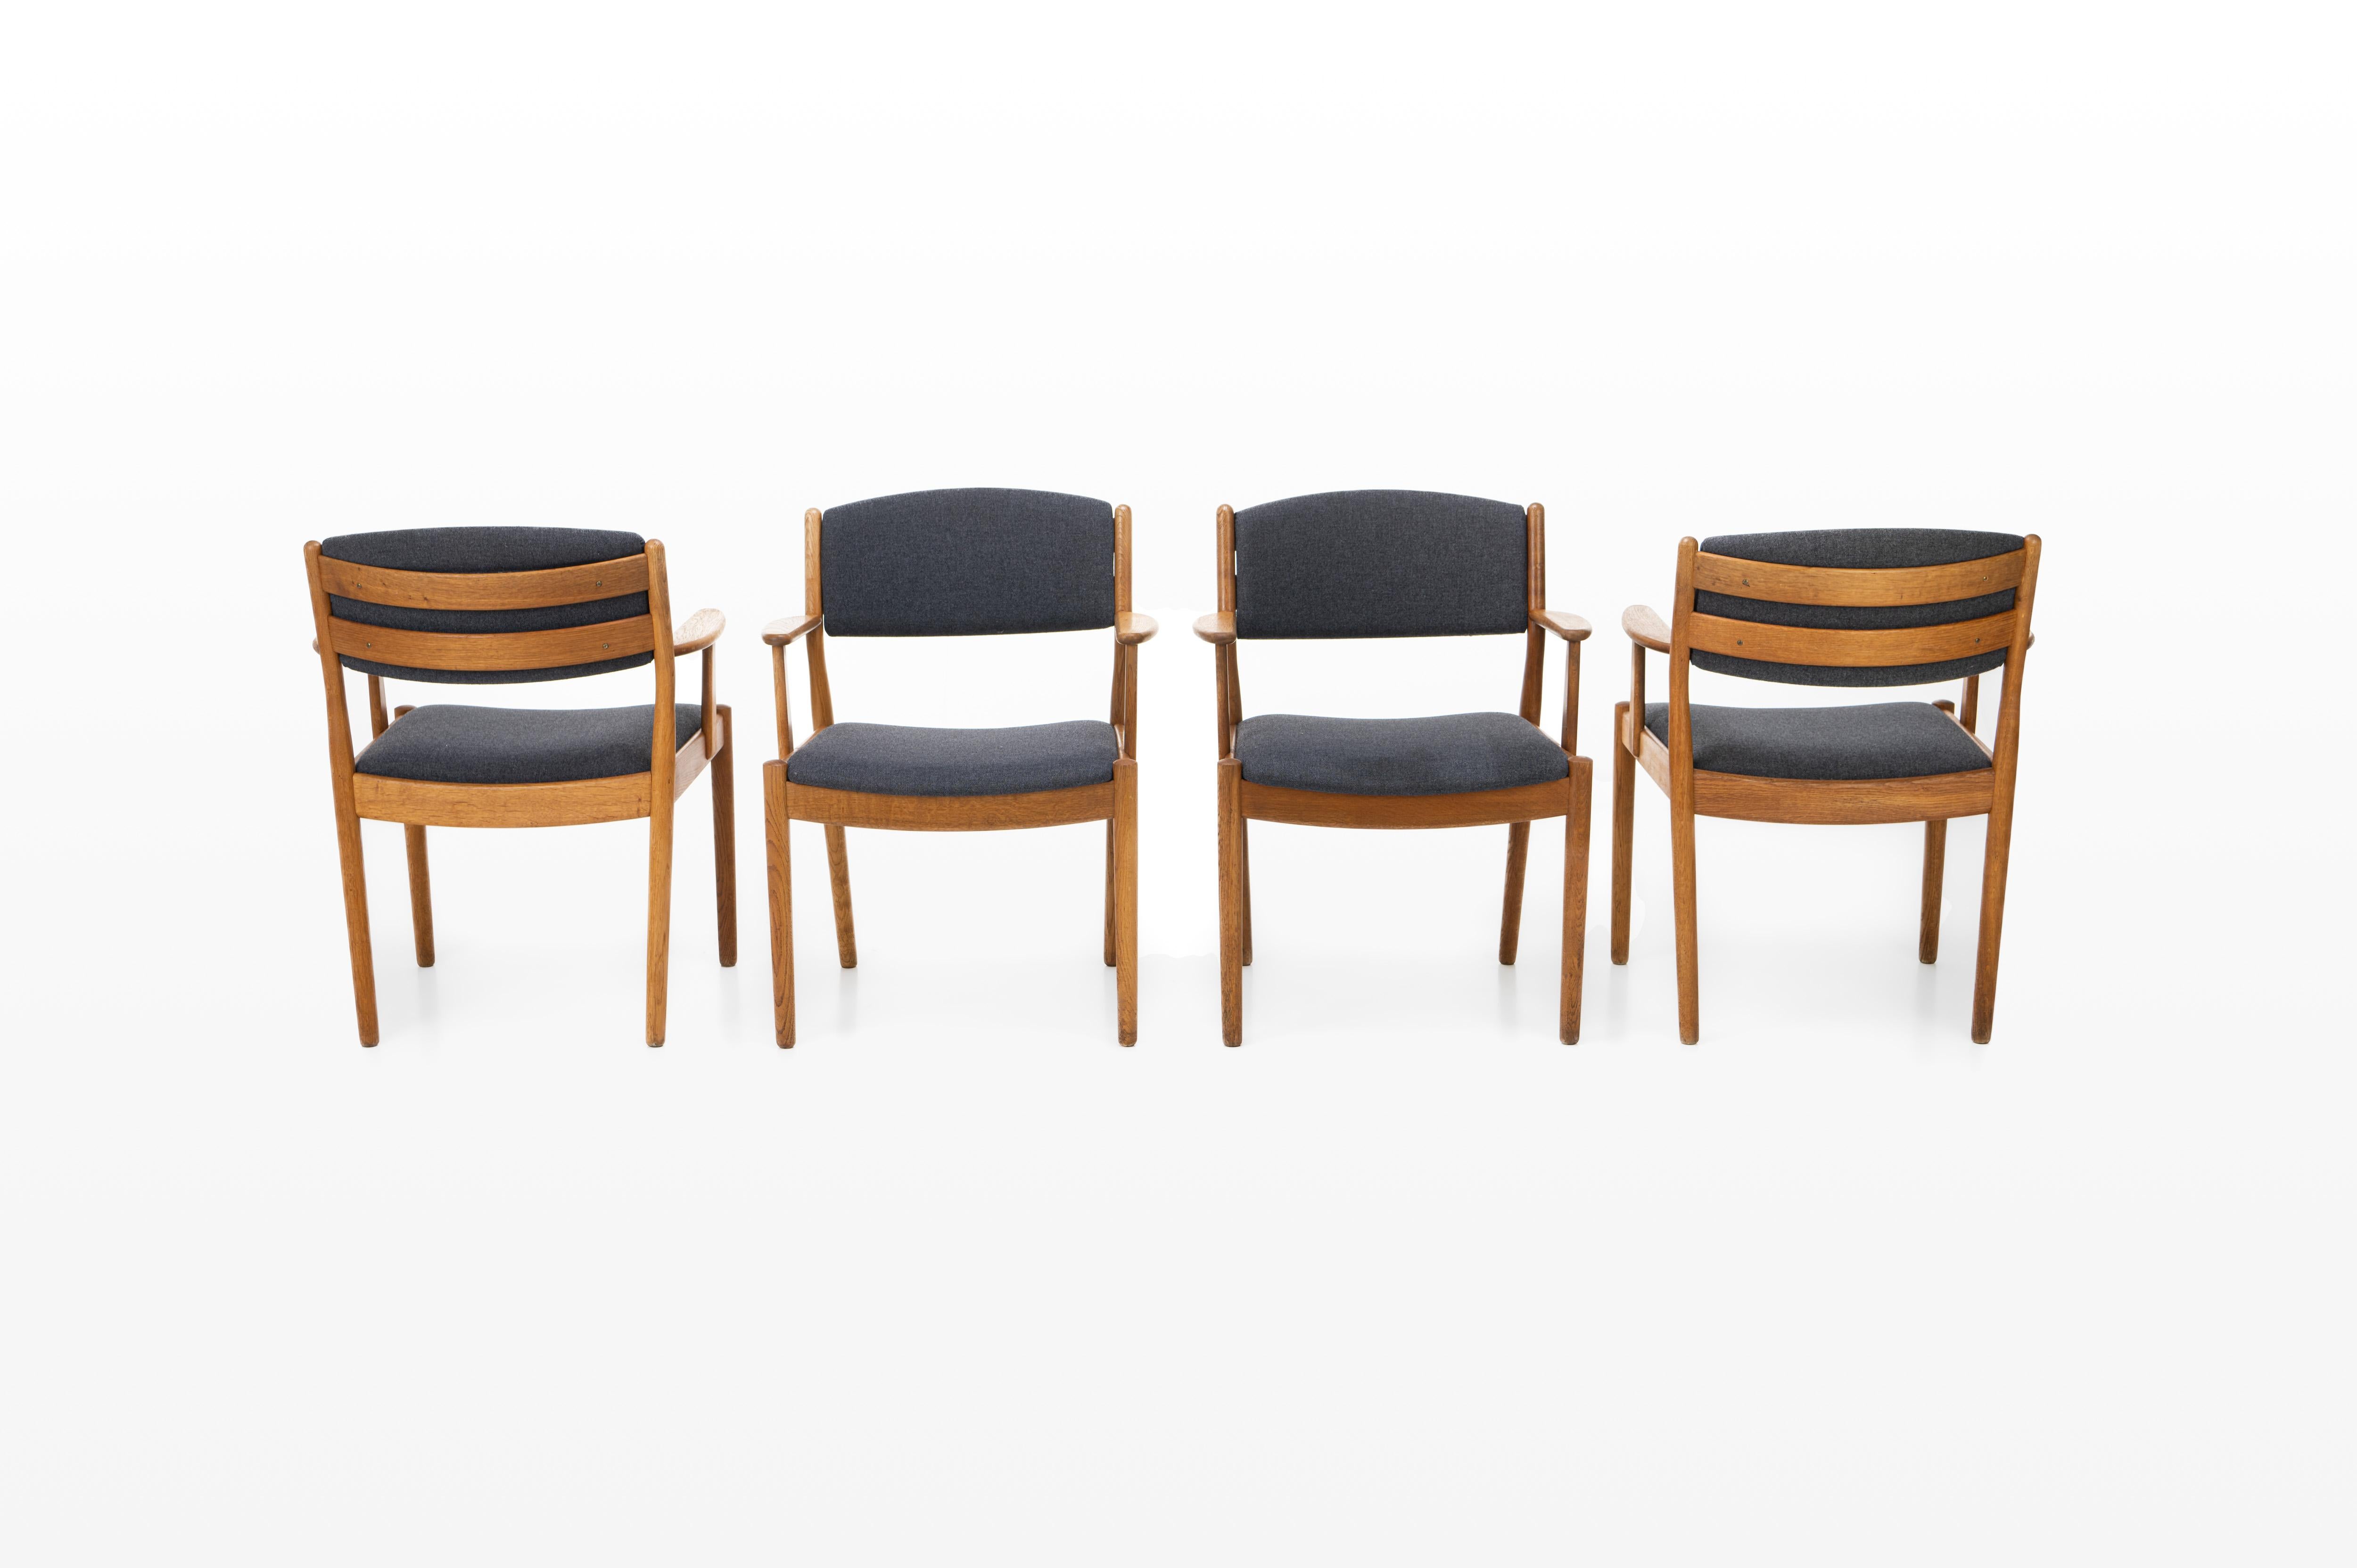 Sehr schöner Satz von vier Vintage-Esszimmerstühlen mit Armlehnen, entworfen von Poul Volther für FDB Møbler, Dänemark 1960er Jahre. Die Stühle haben ein Eichengestell und einen dunkelgrauen Stoff.
